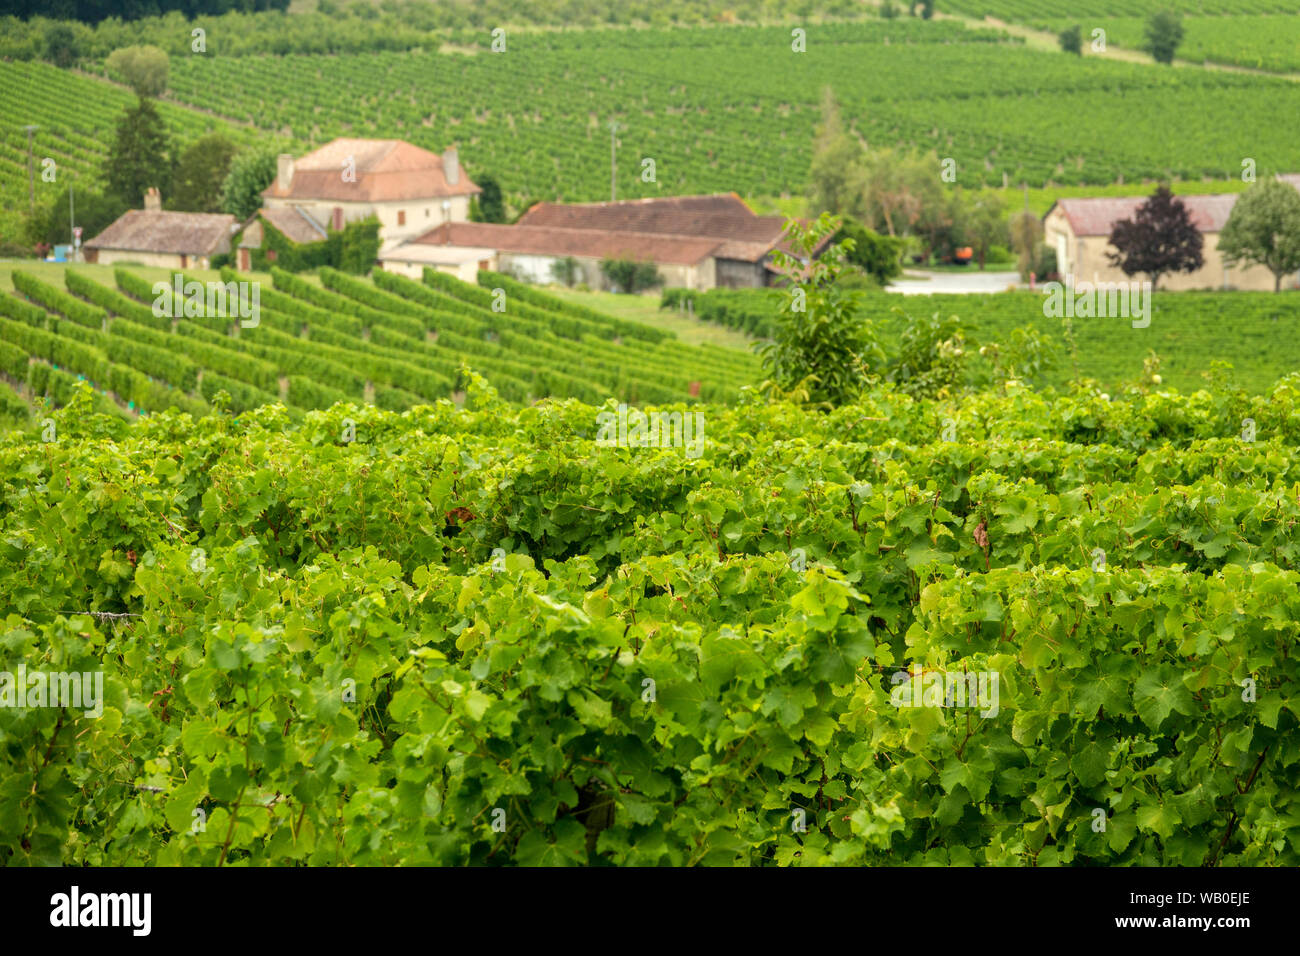 Vignobles de la célèbre région de Monbazillac, Périgord. France Banque D'Images